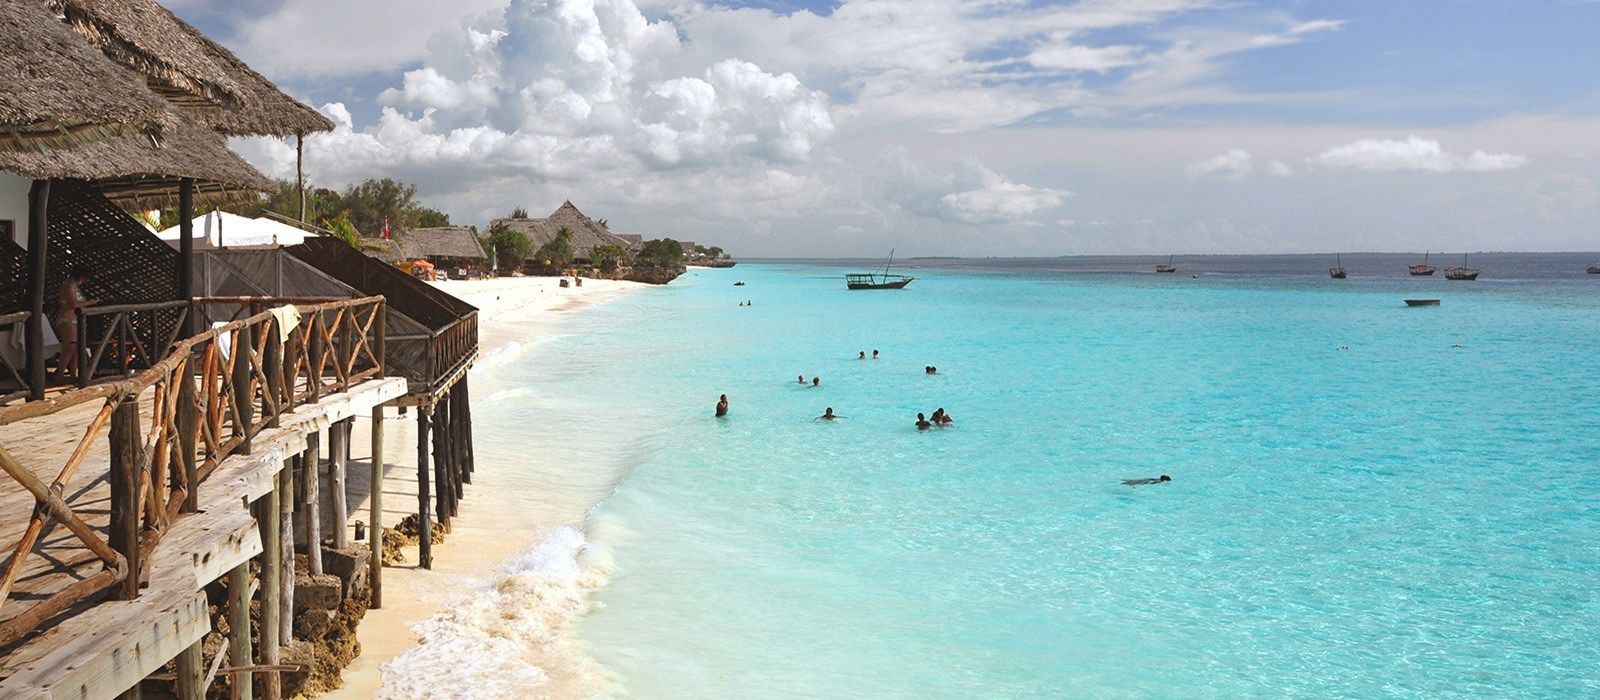 Zanzibar's image 1